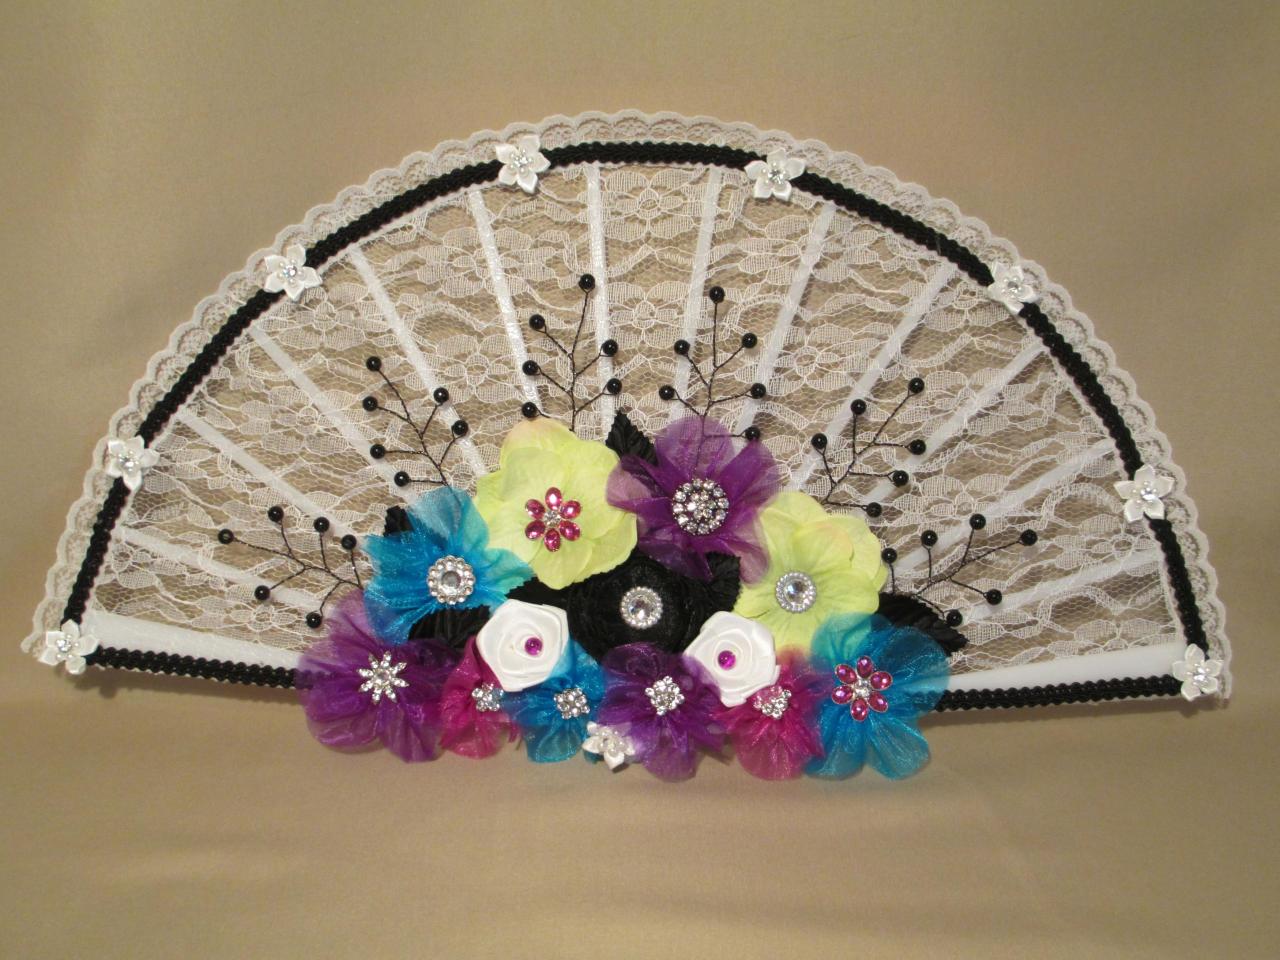 Oak - Bridal Bouquet Fan - White Lace Fan - Wedding Flowers - Handmade Flowers - Handmade In Colorado